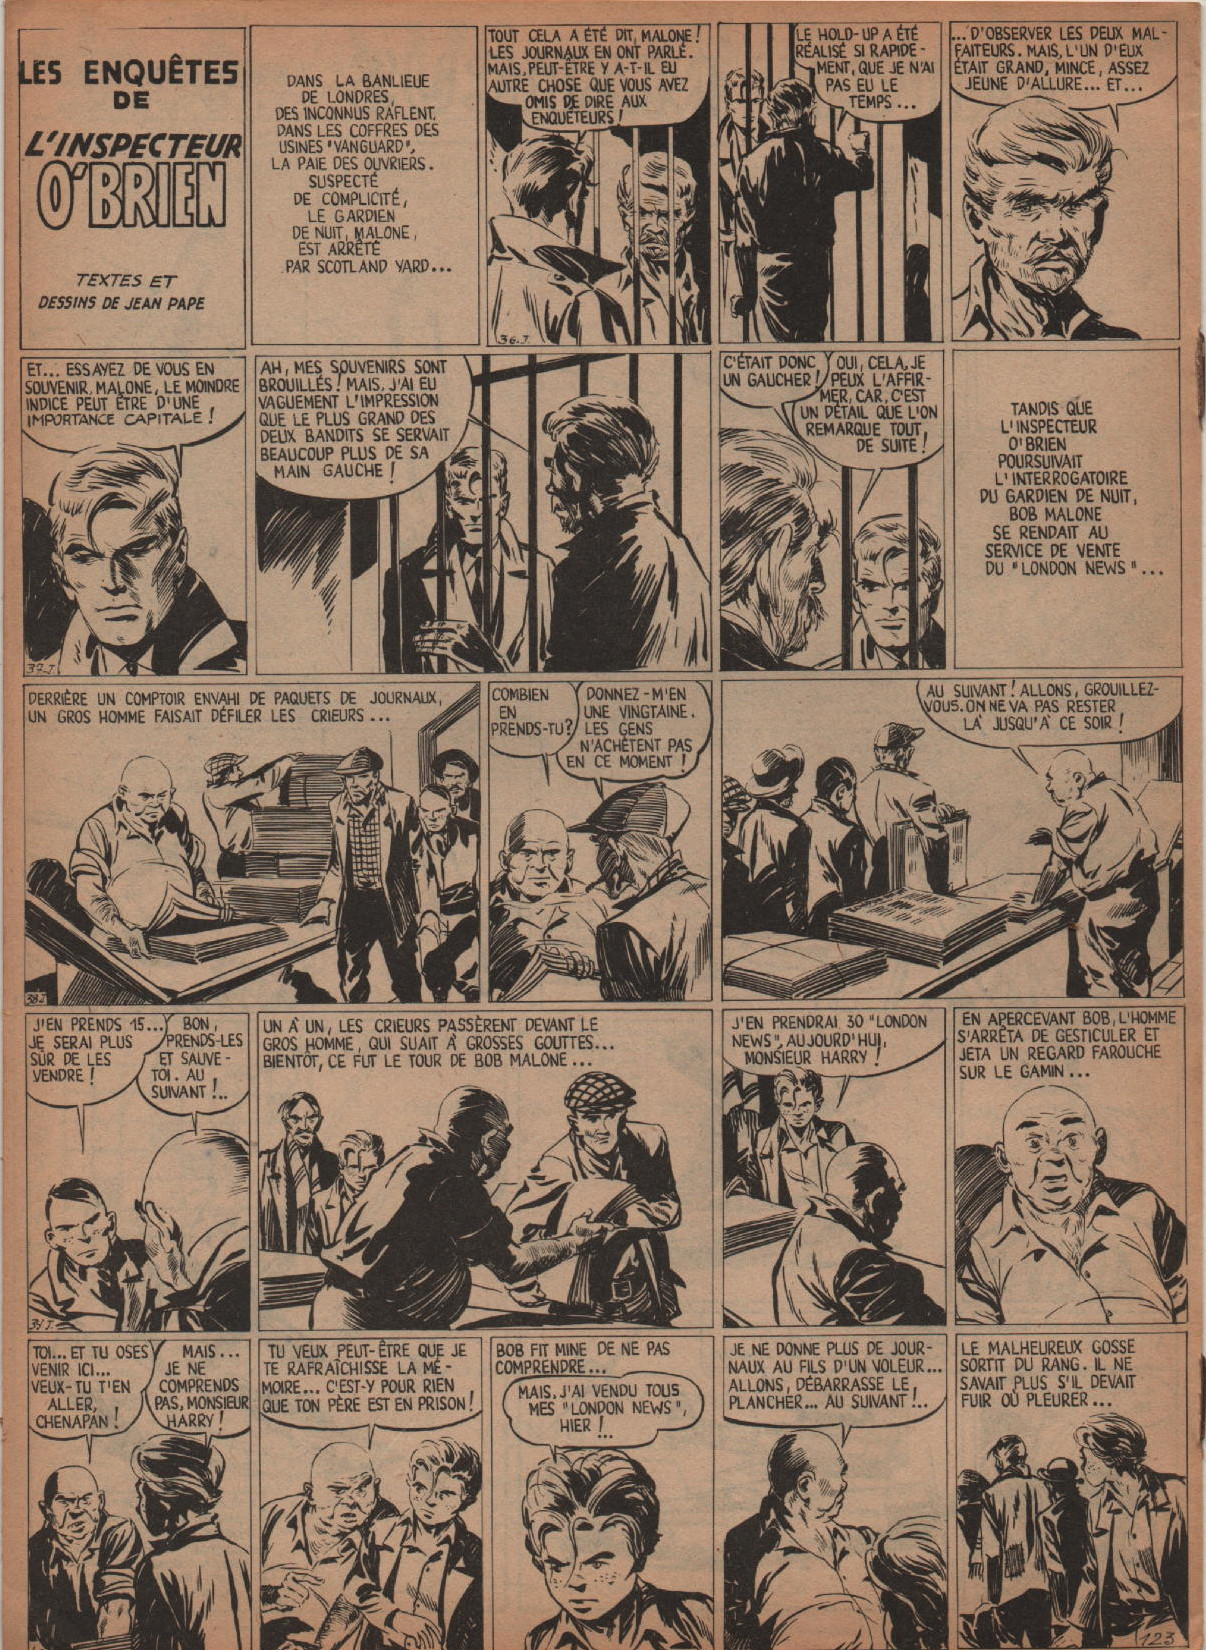 « Les Enquêtes du sergent O’Brien » : L’Invincible n° 123 (1° trimestre 1955).